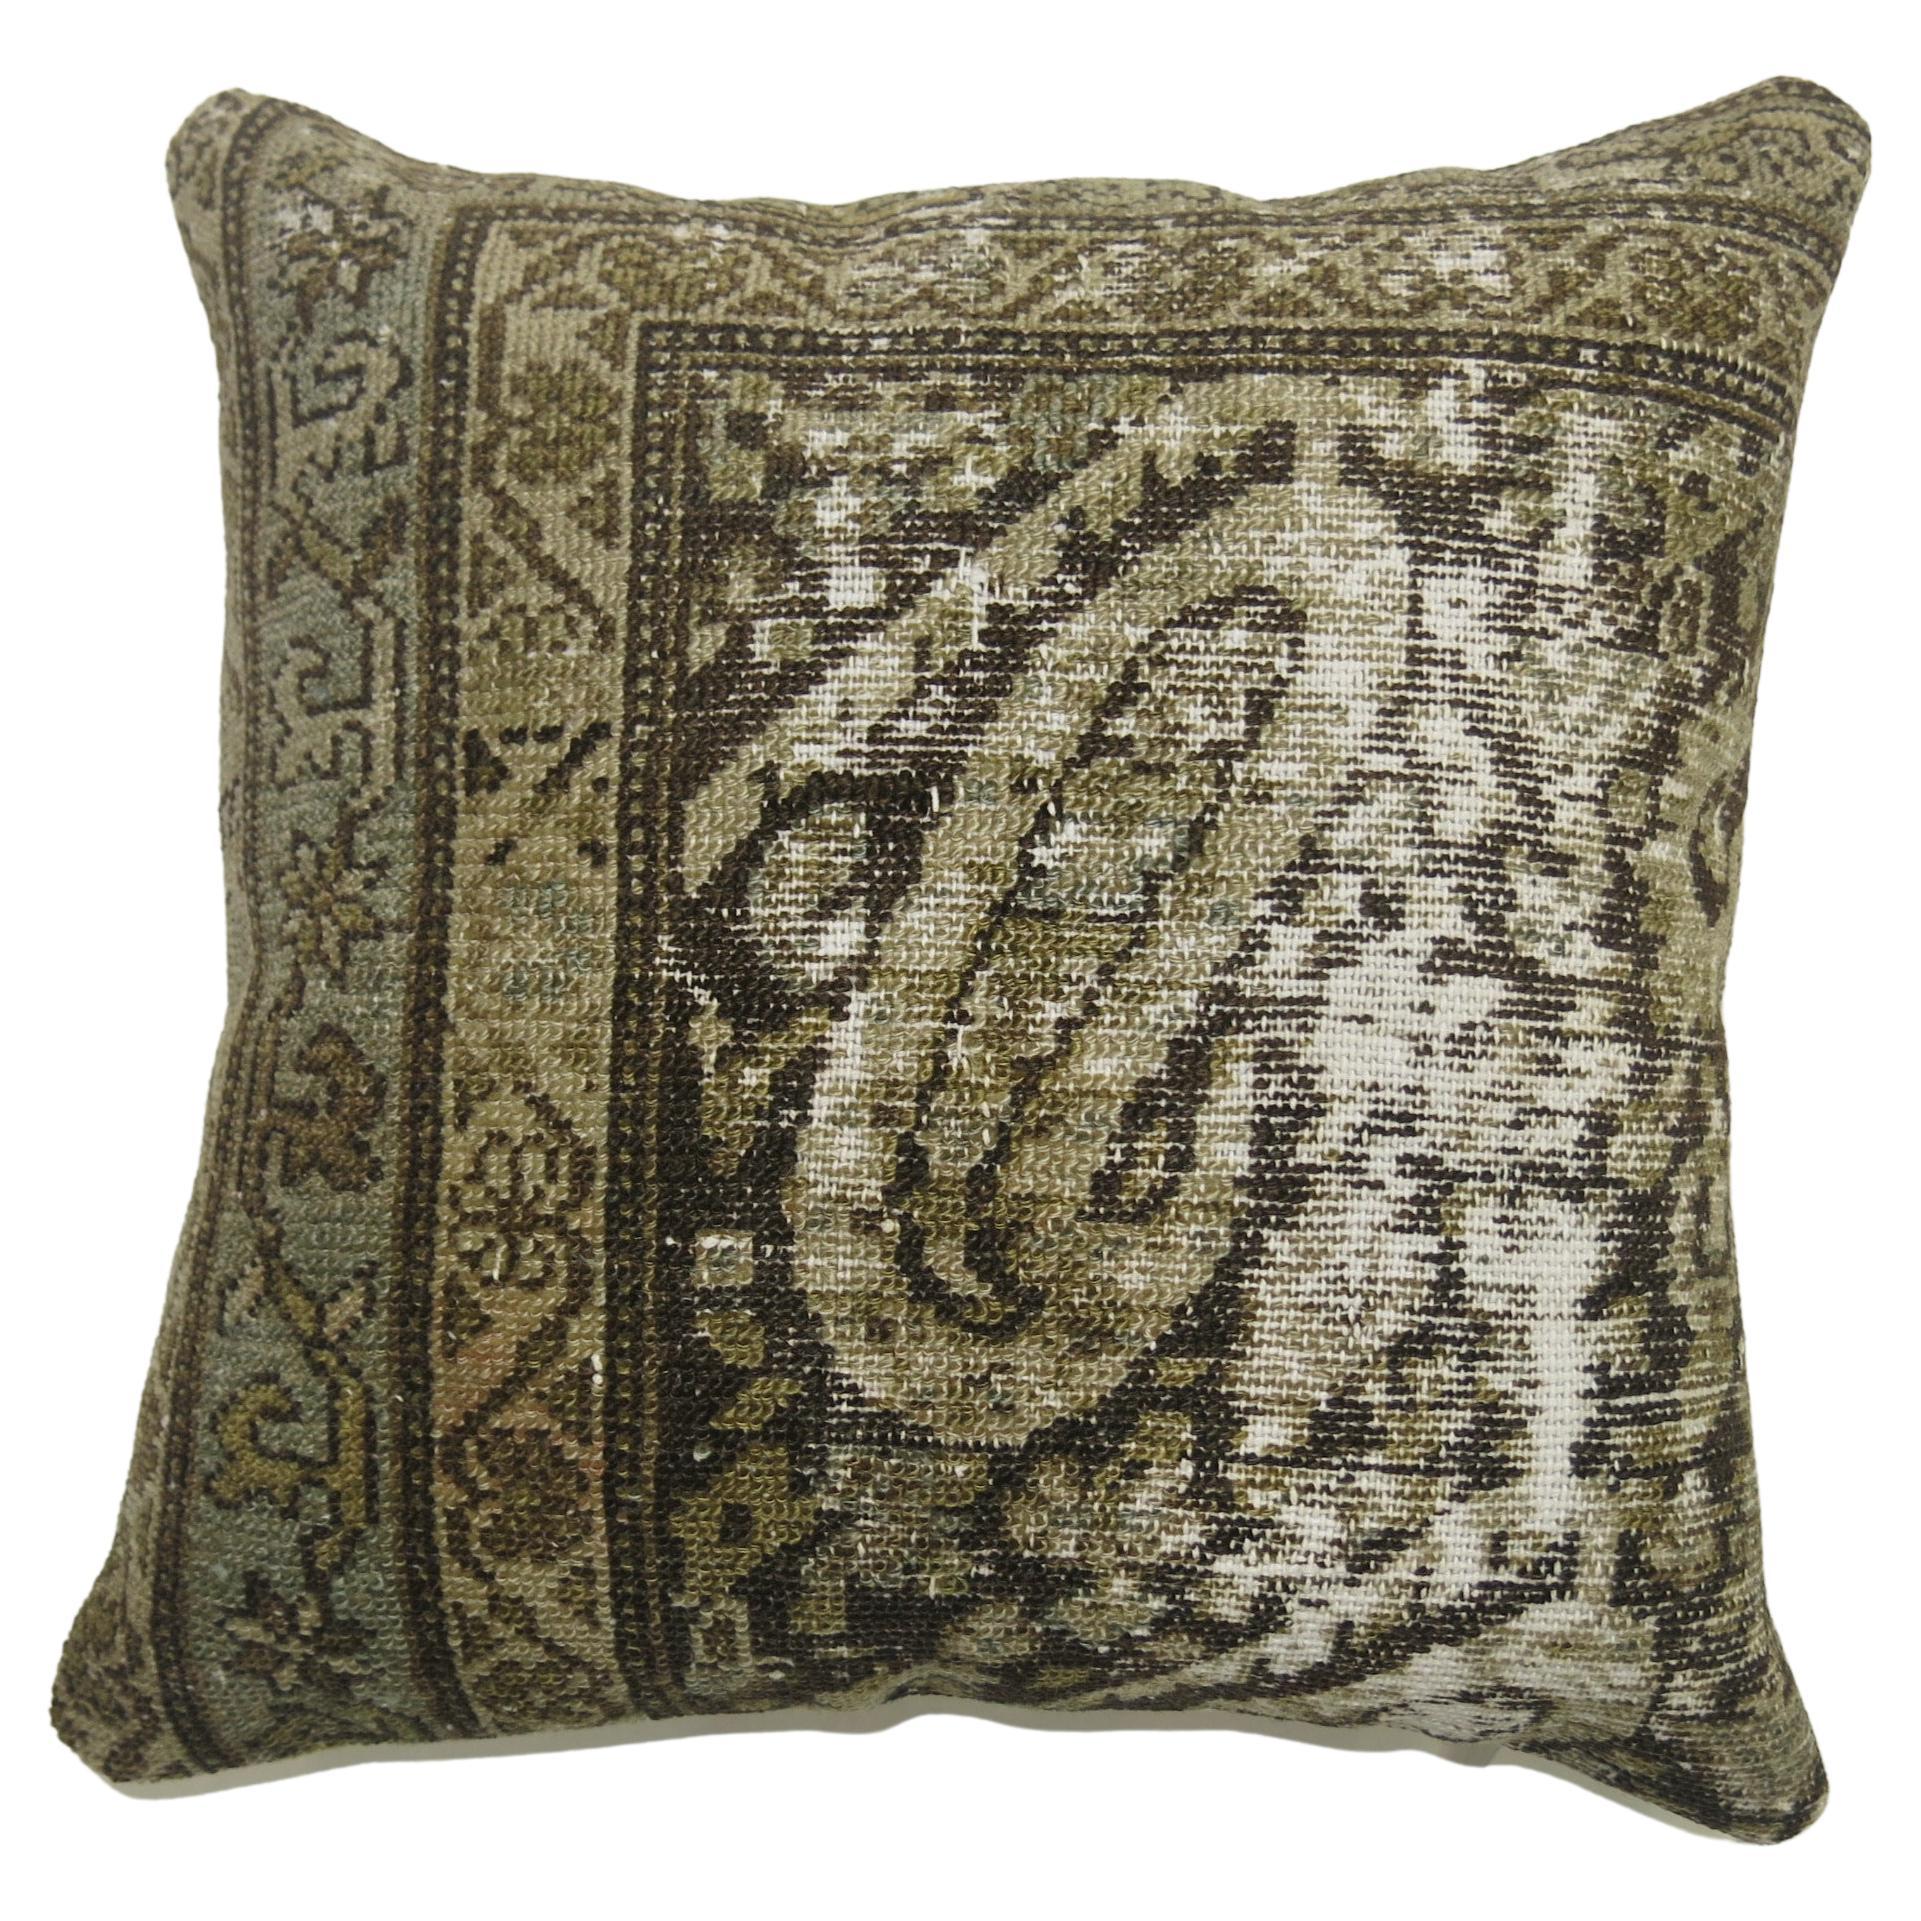 Kissen aus einem antiken, abgenutzten persischen Malayer-Teppich.

Maße: 16'' x 16''.